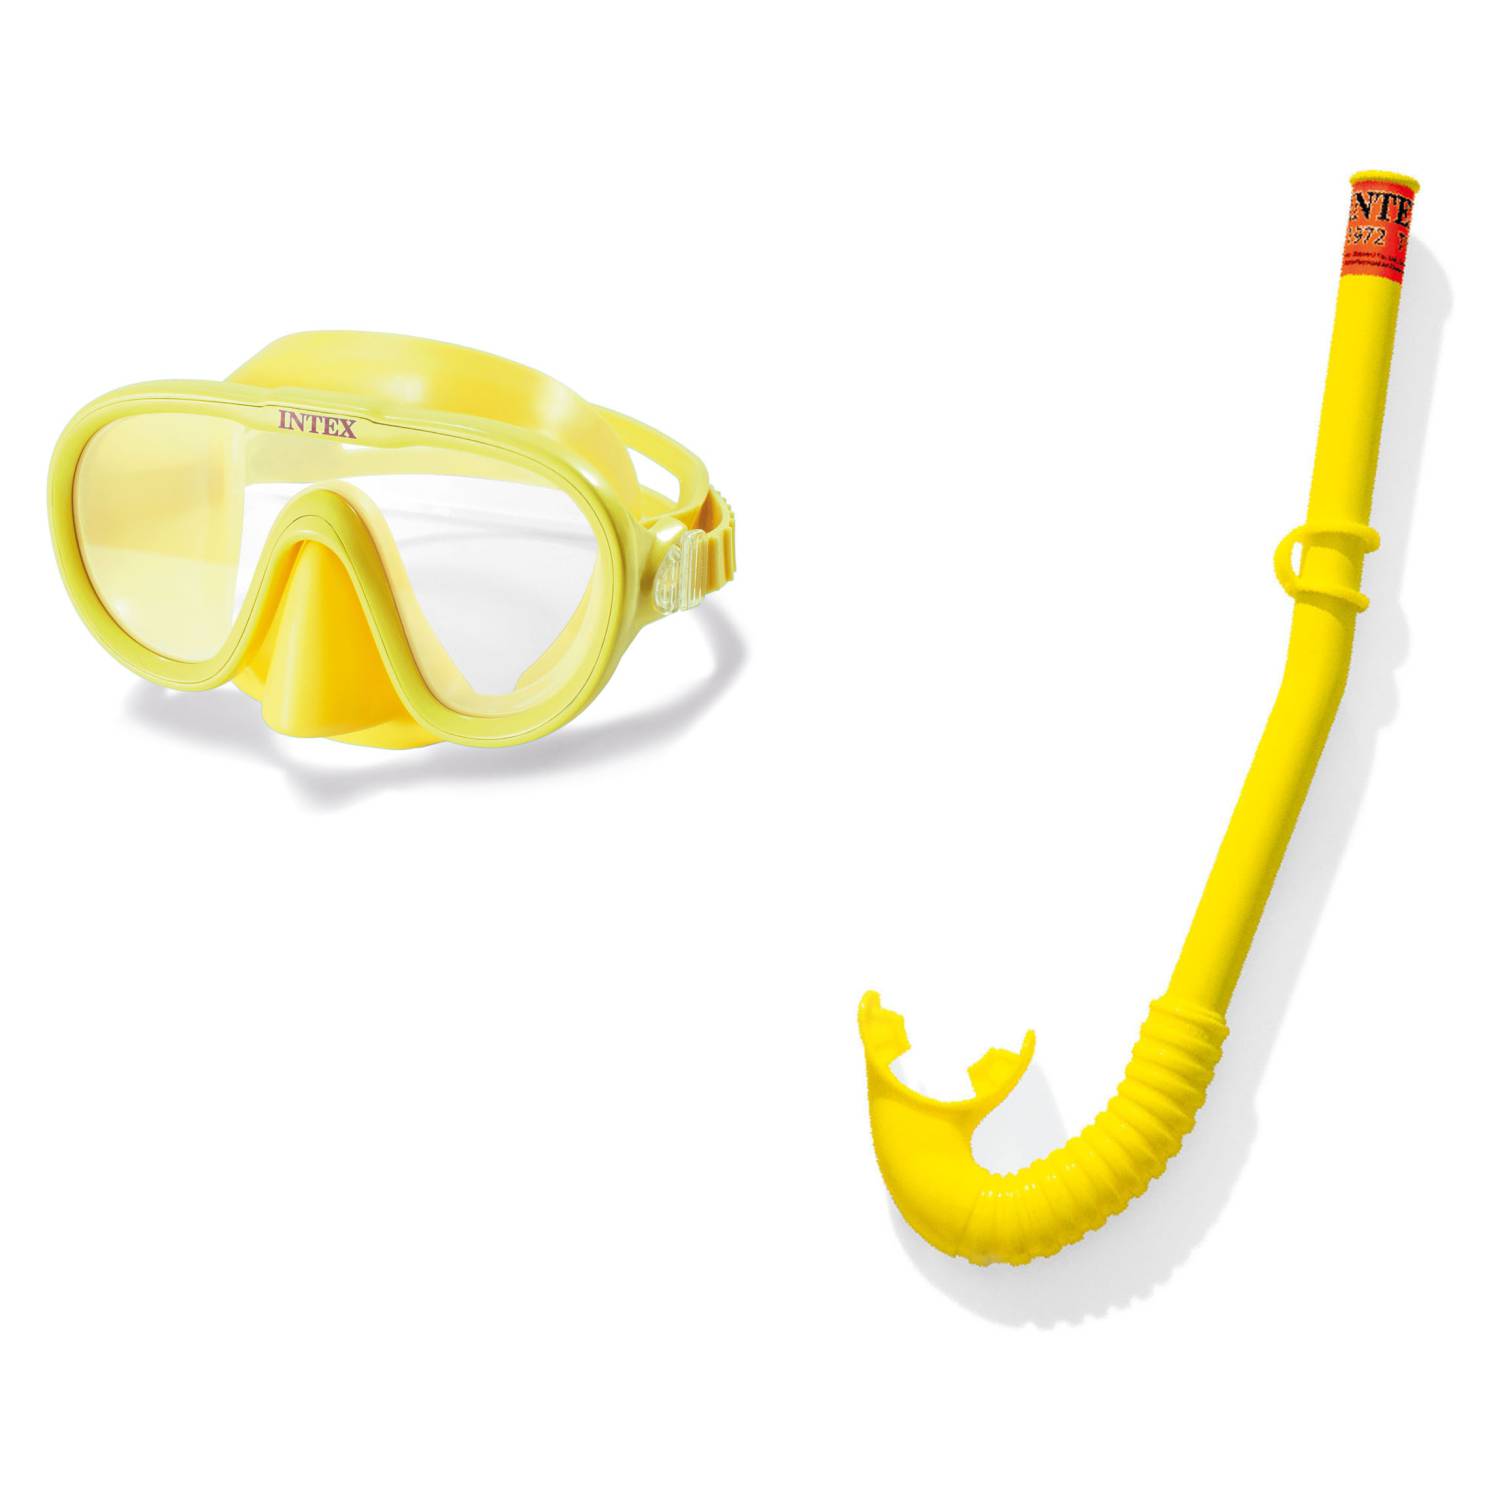 Mascara y snorkel 